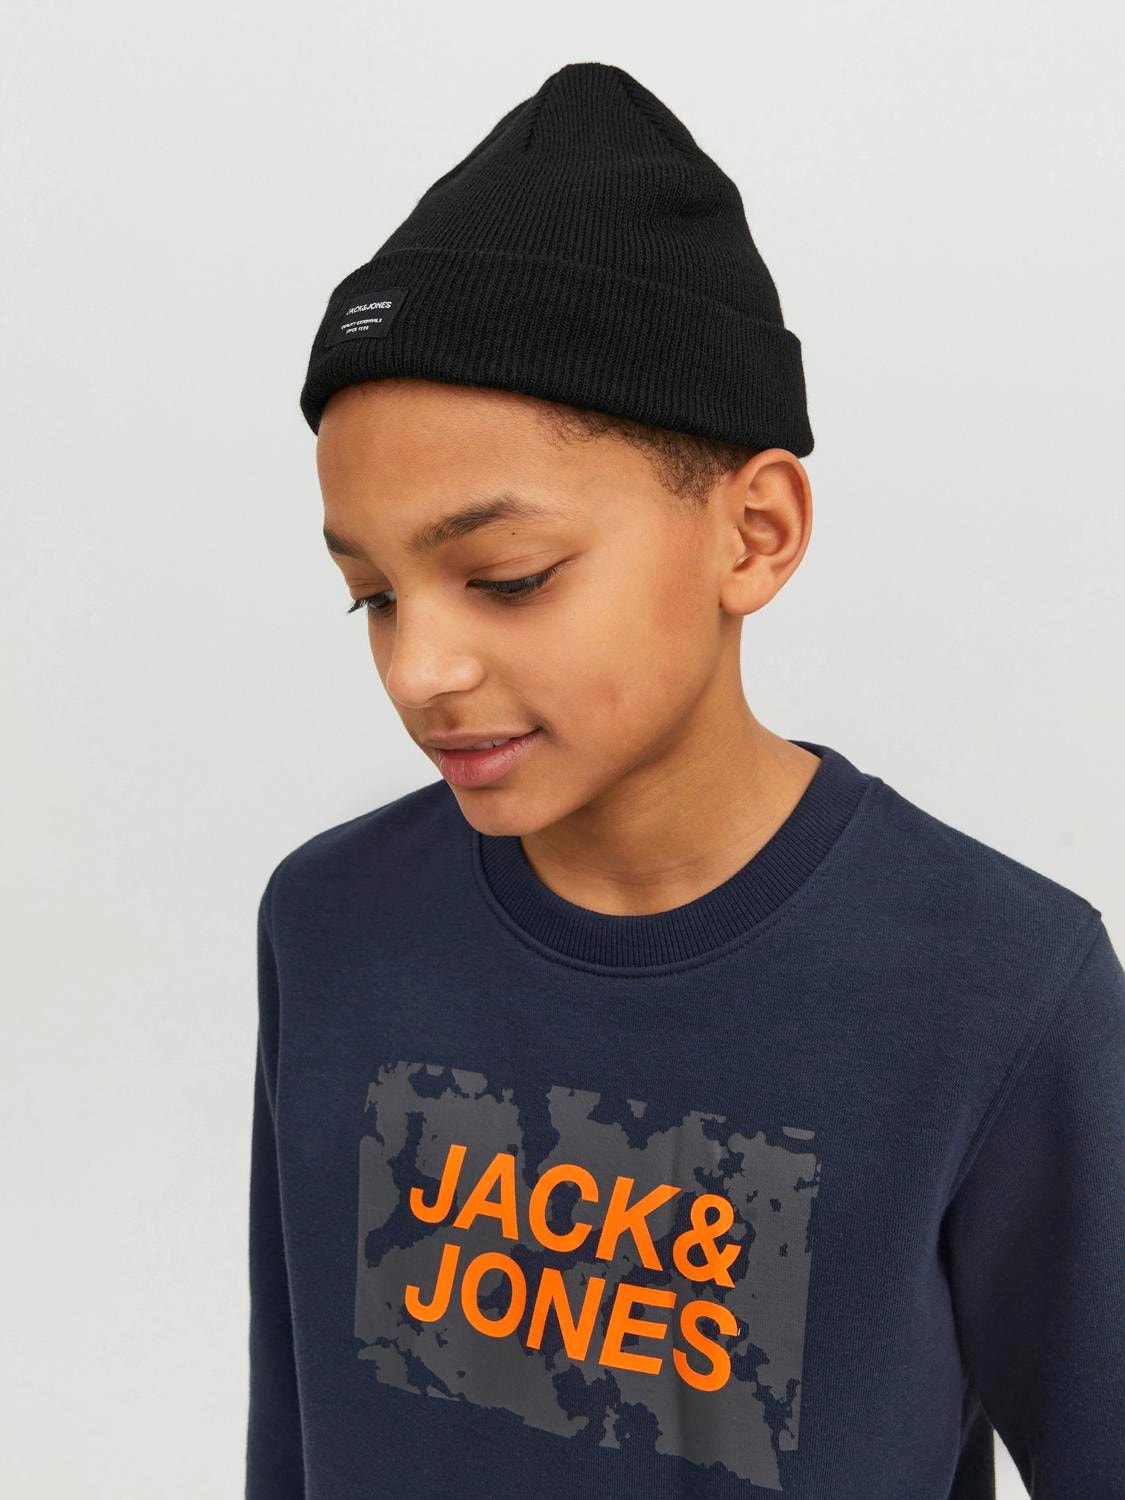 Jack & Jones Beanie For boys -Black - 12160311